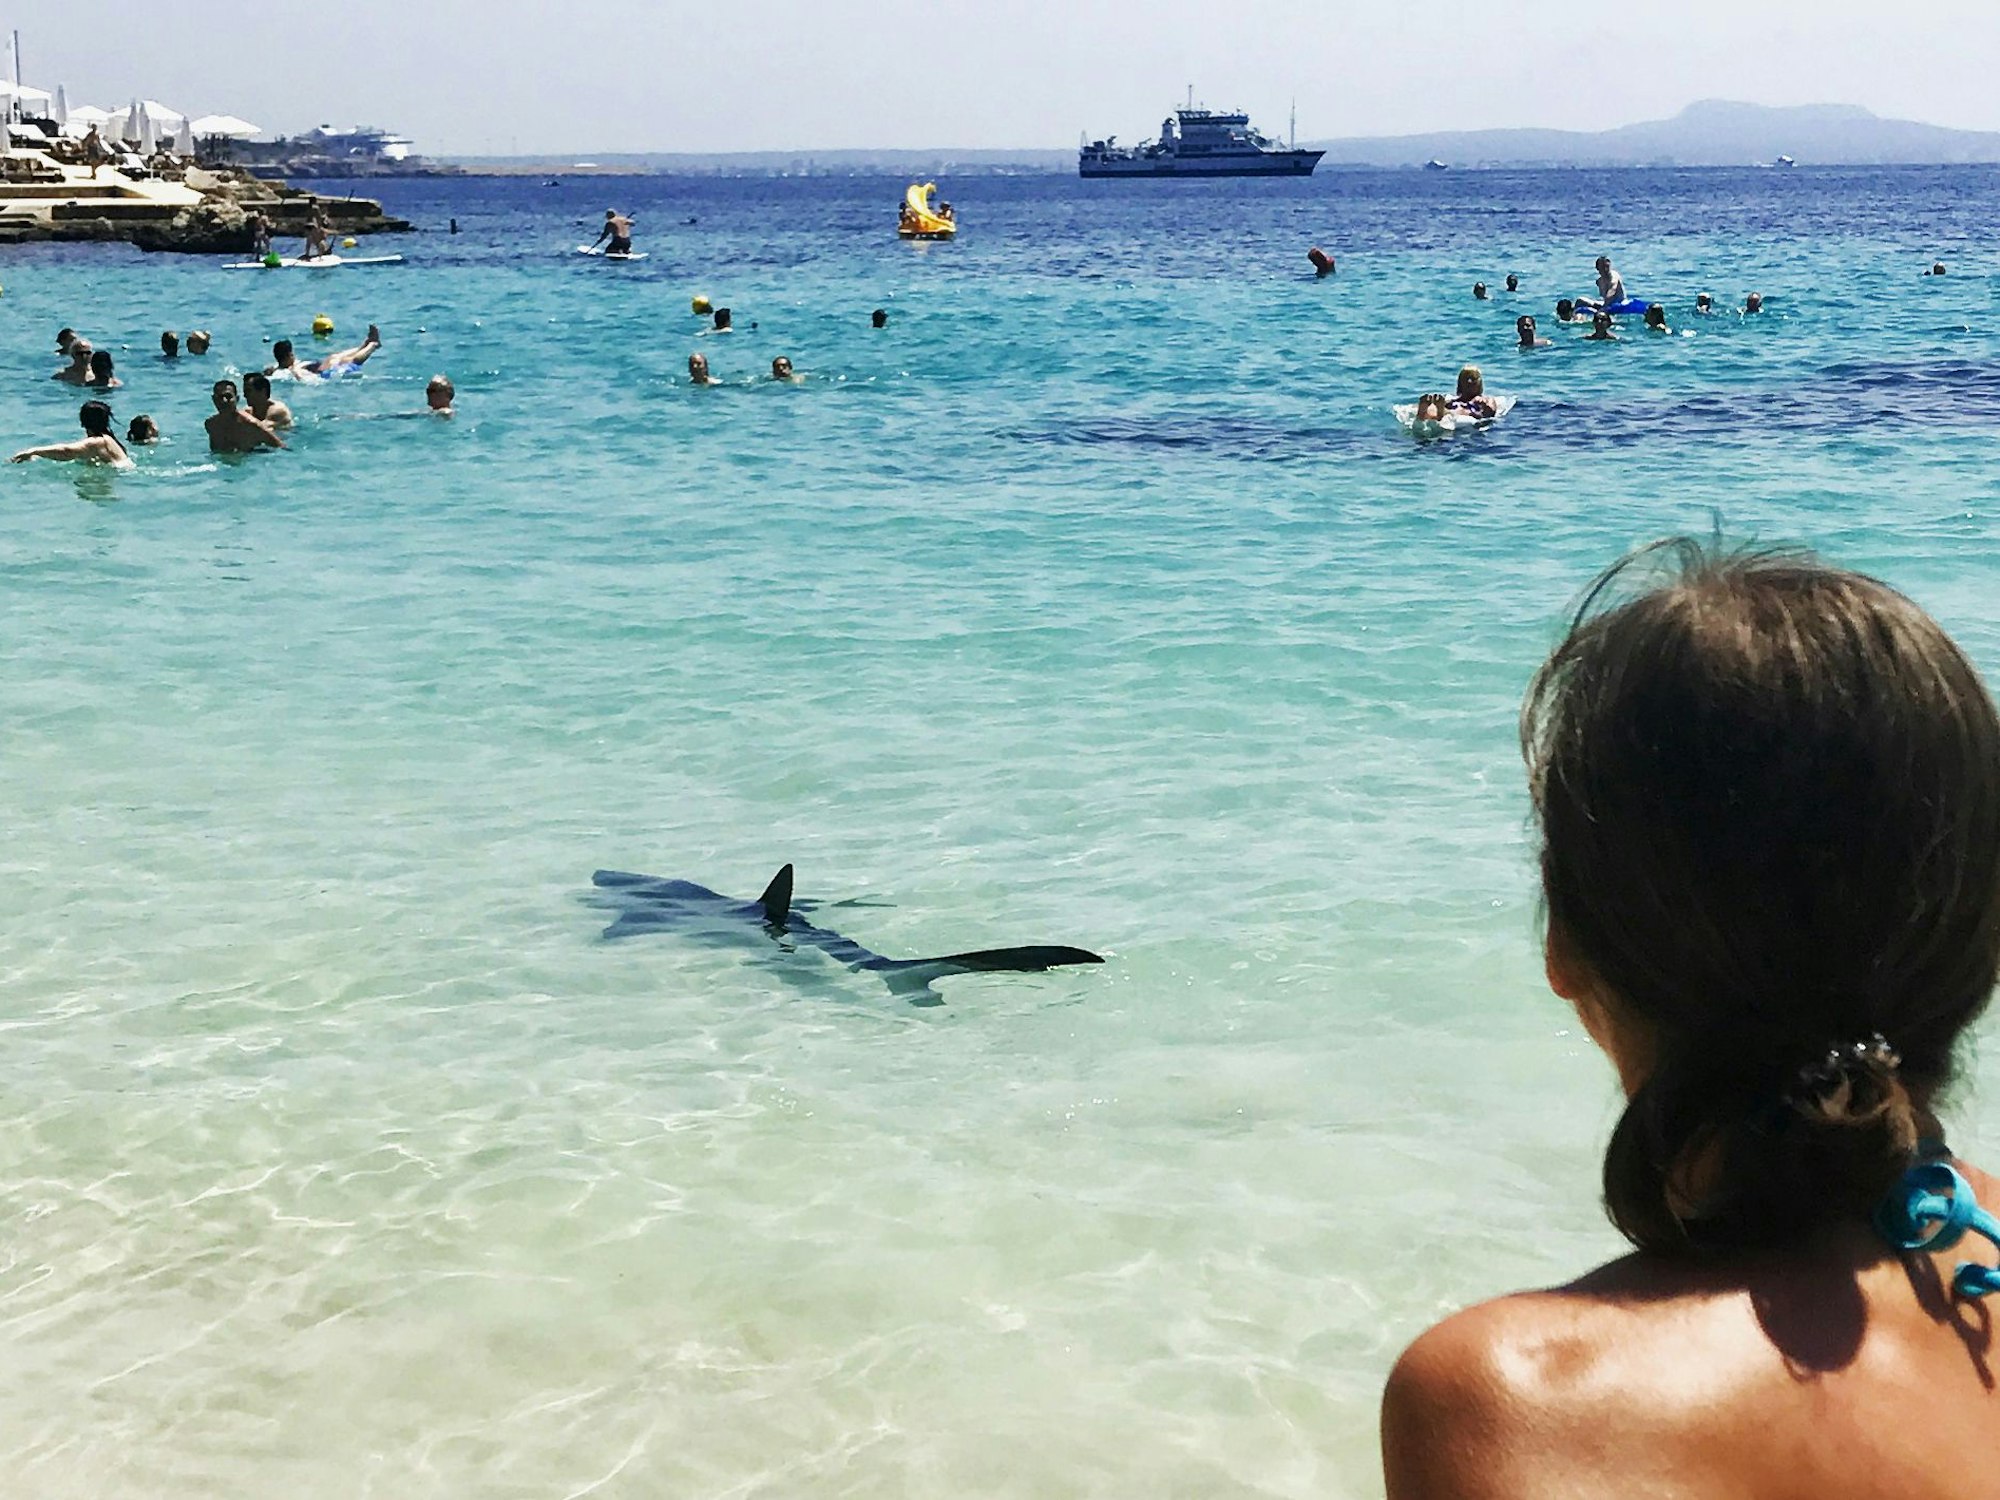 Das Foto aus dem Jahr 2017 zeigt einen Hai, der vor Palma de Mallorca im Meer schwimmt. Um ihn herum befinden sich Menschen im Wasser, im Hintergrund fahren Schiffe.